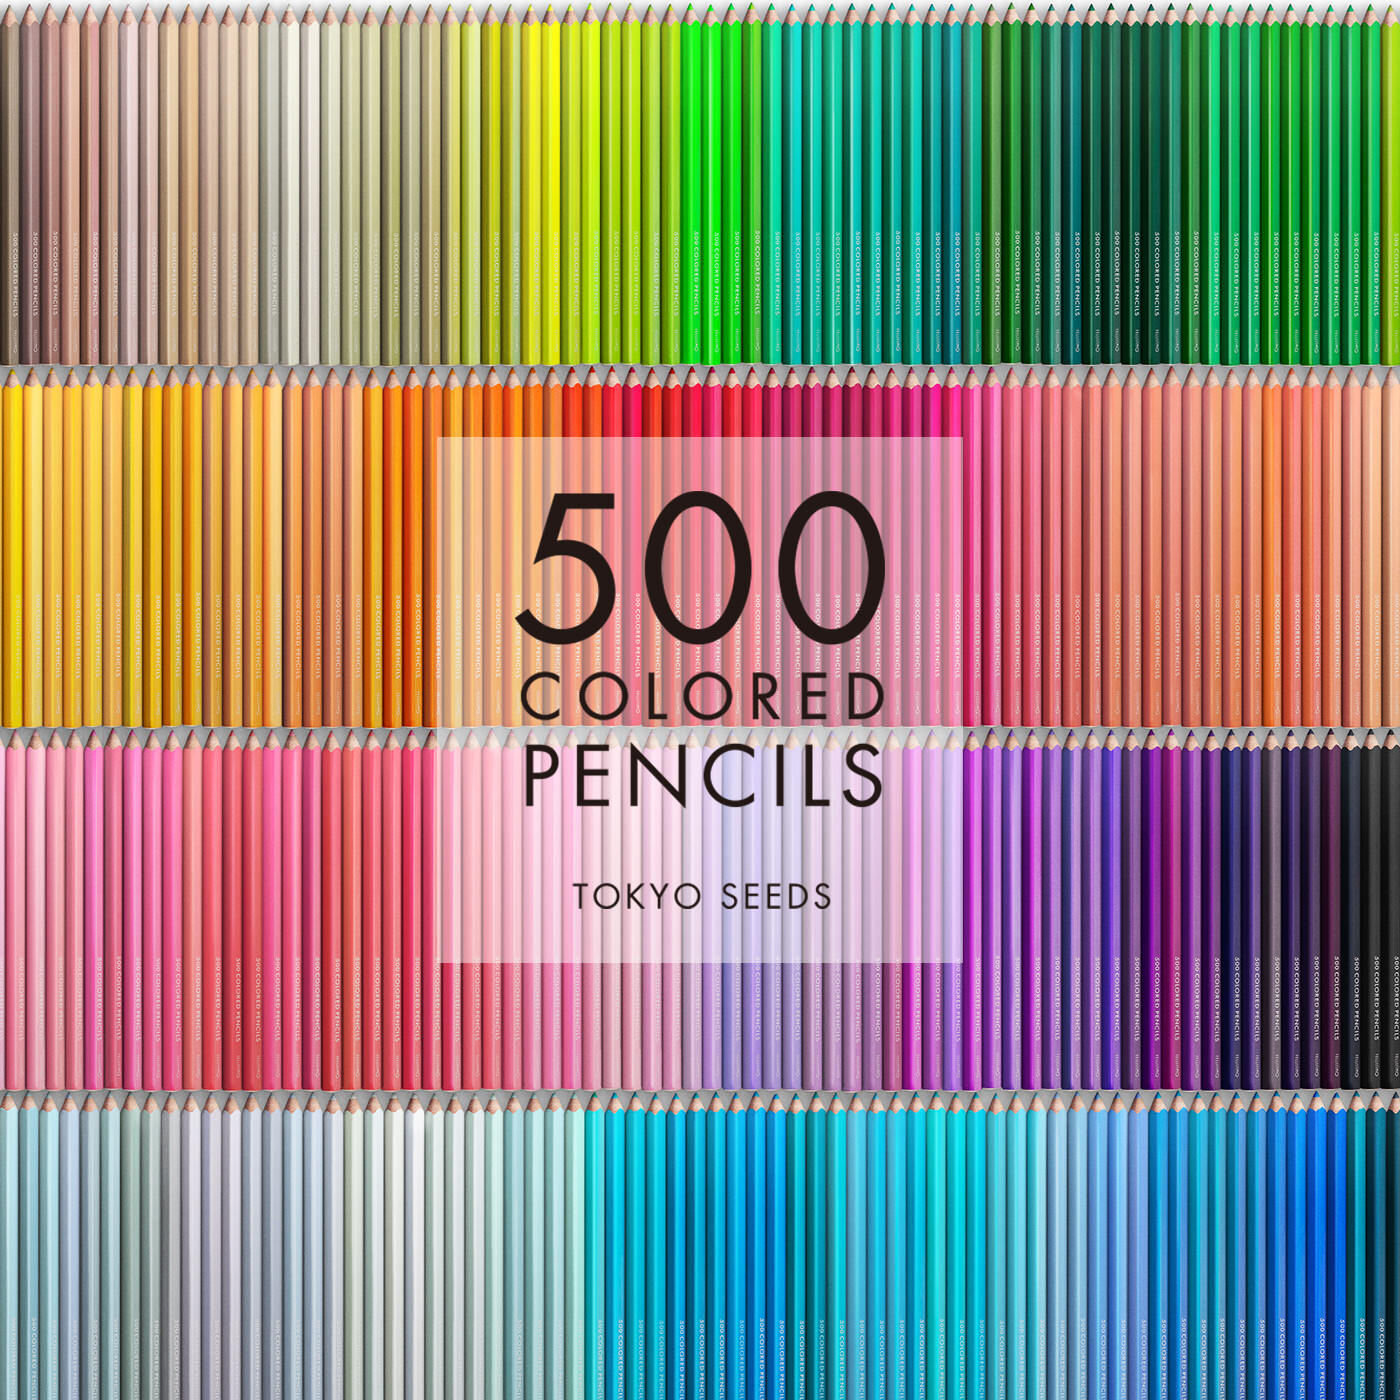 Real Stock|【46/500 JOLLY GRAND】500色の色えんぴつ TOKYO SEEDS|1992年、世界初の「500色」という膨大な色数の色えんぴつが誕生して以来、その販売数は発売当初から合わせると、世界55ヵ国10万セット以上。今回、メイド・イン・ジャパンにこだわり、すべてが新しく生まれ変わって登場しました。